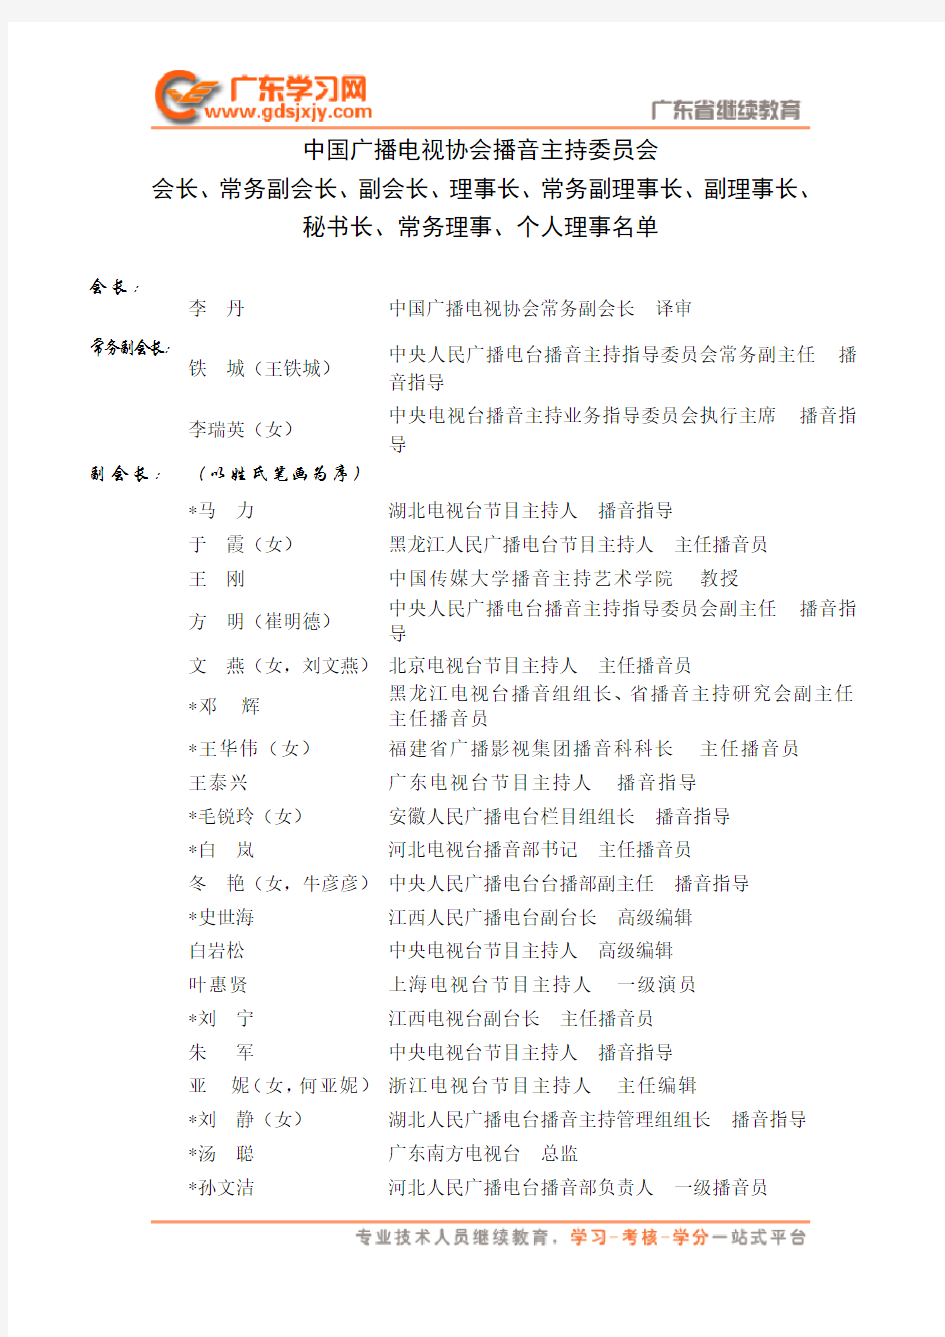 中国广播电视协会播音主持委员会名单-播音员专业技术材料系列